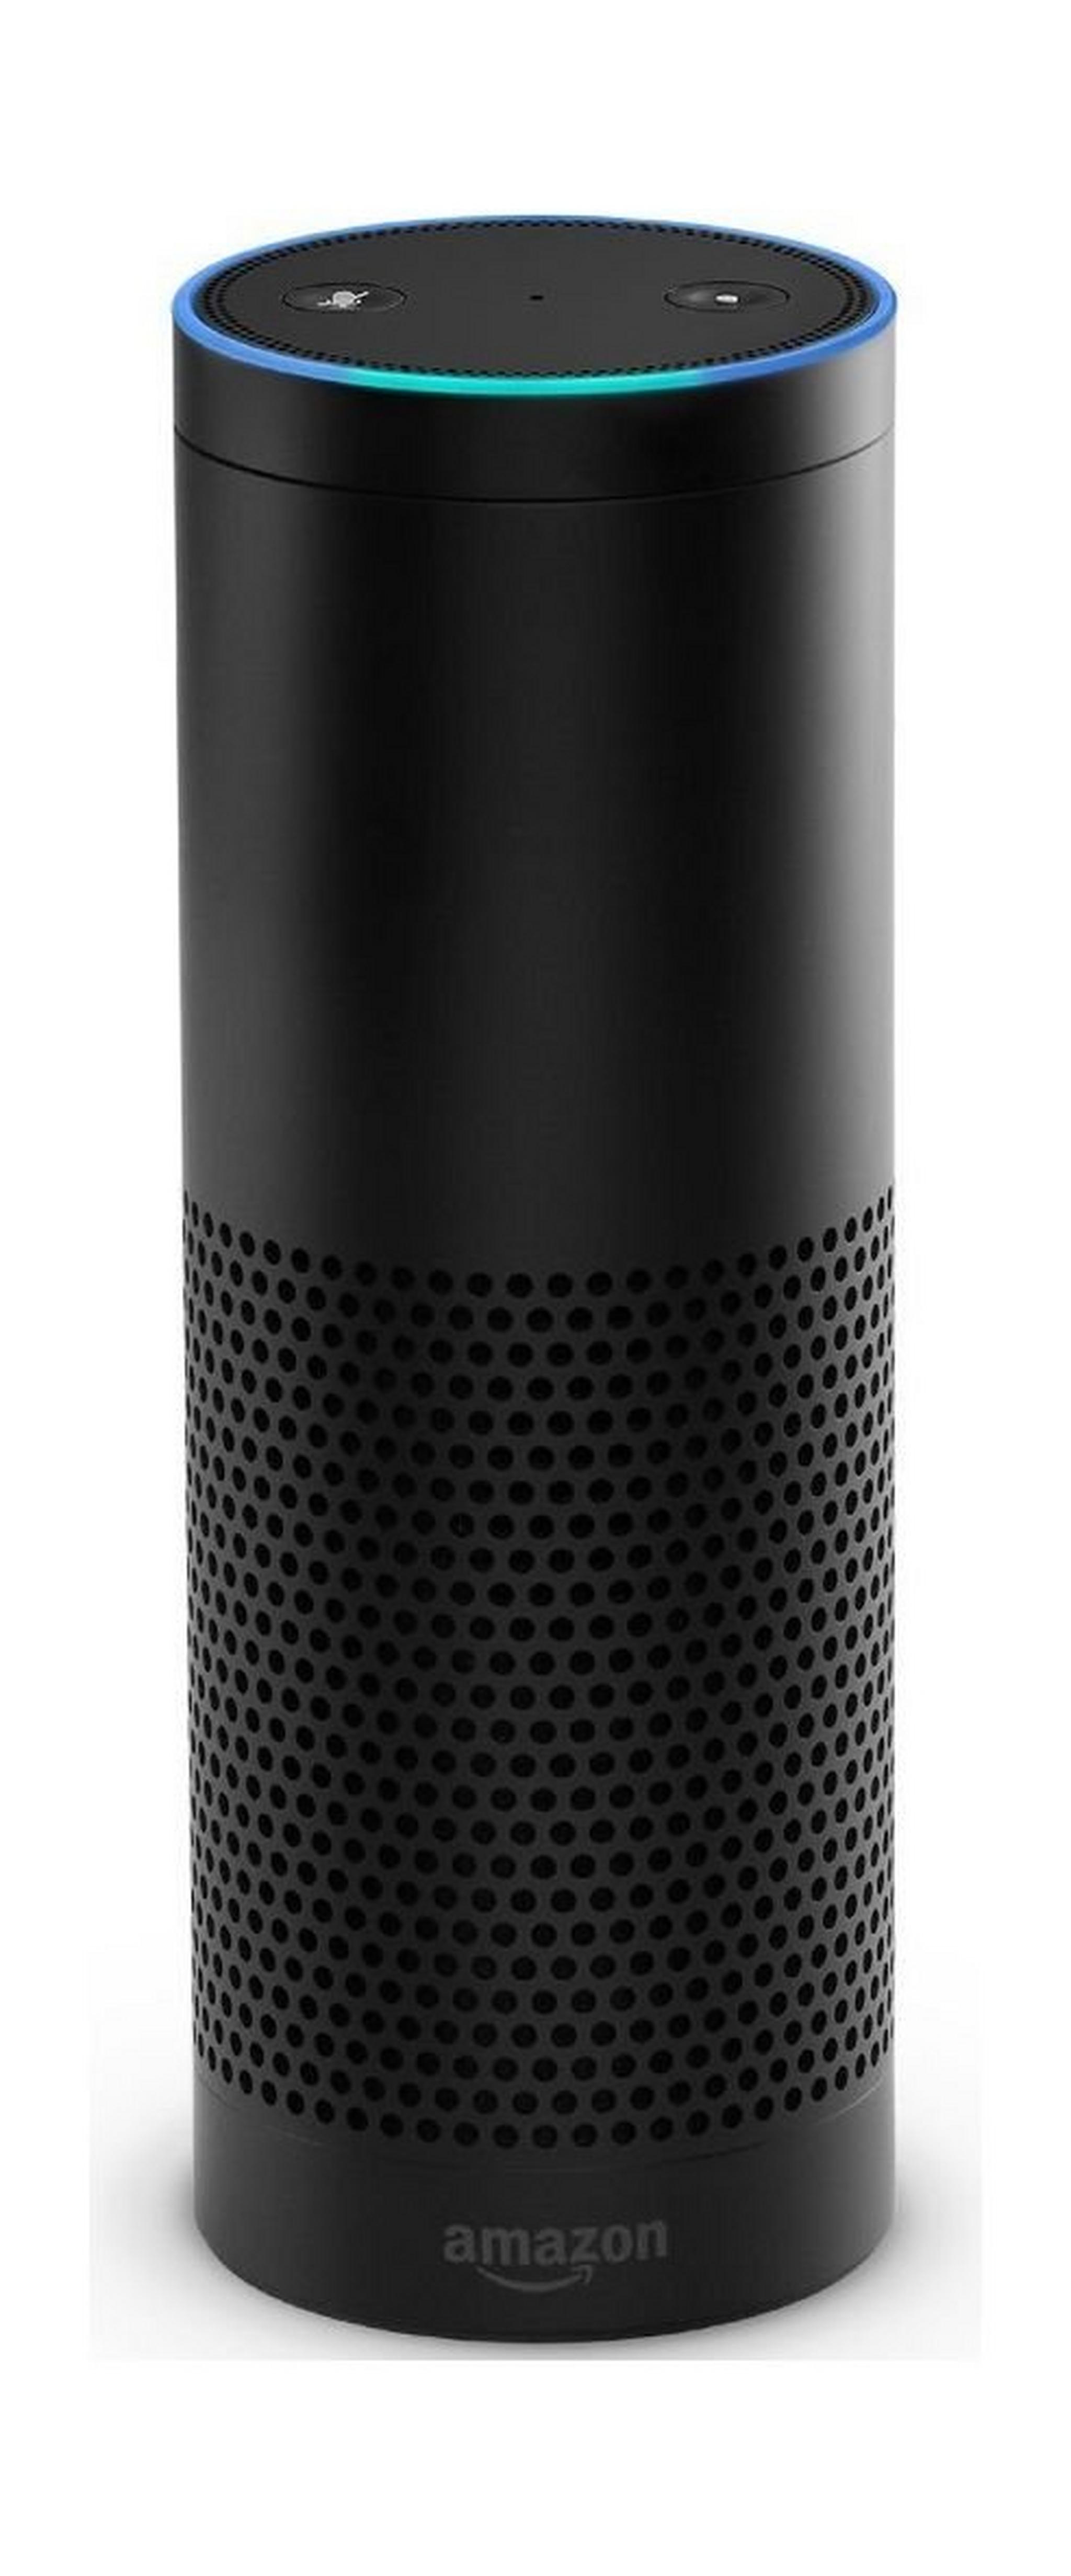 Amazon Echo Voice Recorder and Speaker - Black